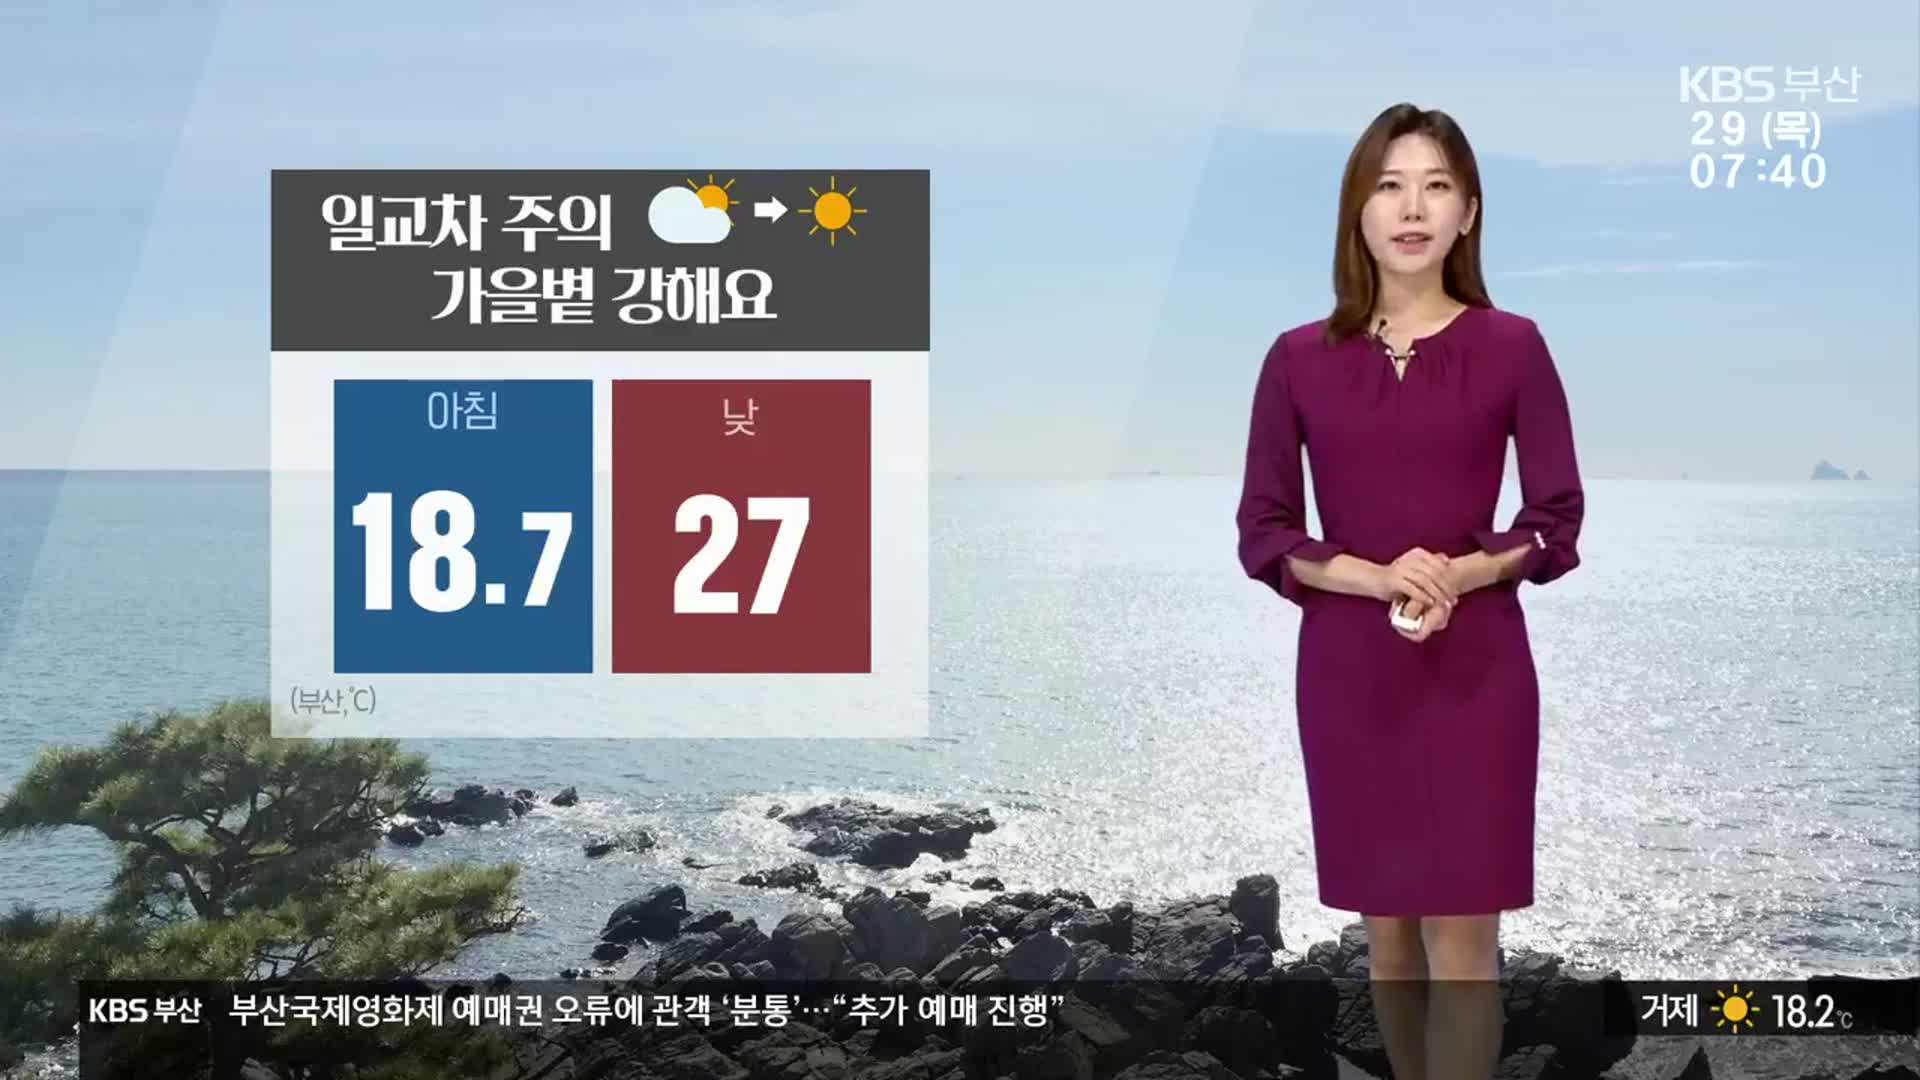 [날씨] 부산 낮 최고 27도…대기 건조, 불씨 관리 유의